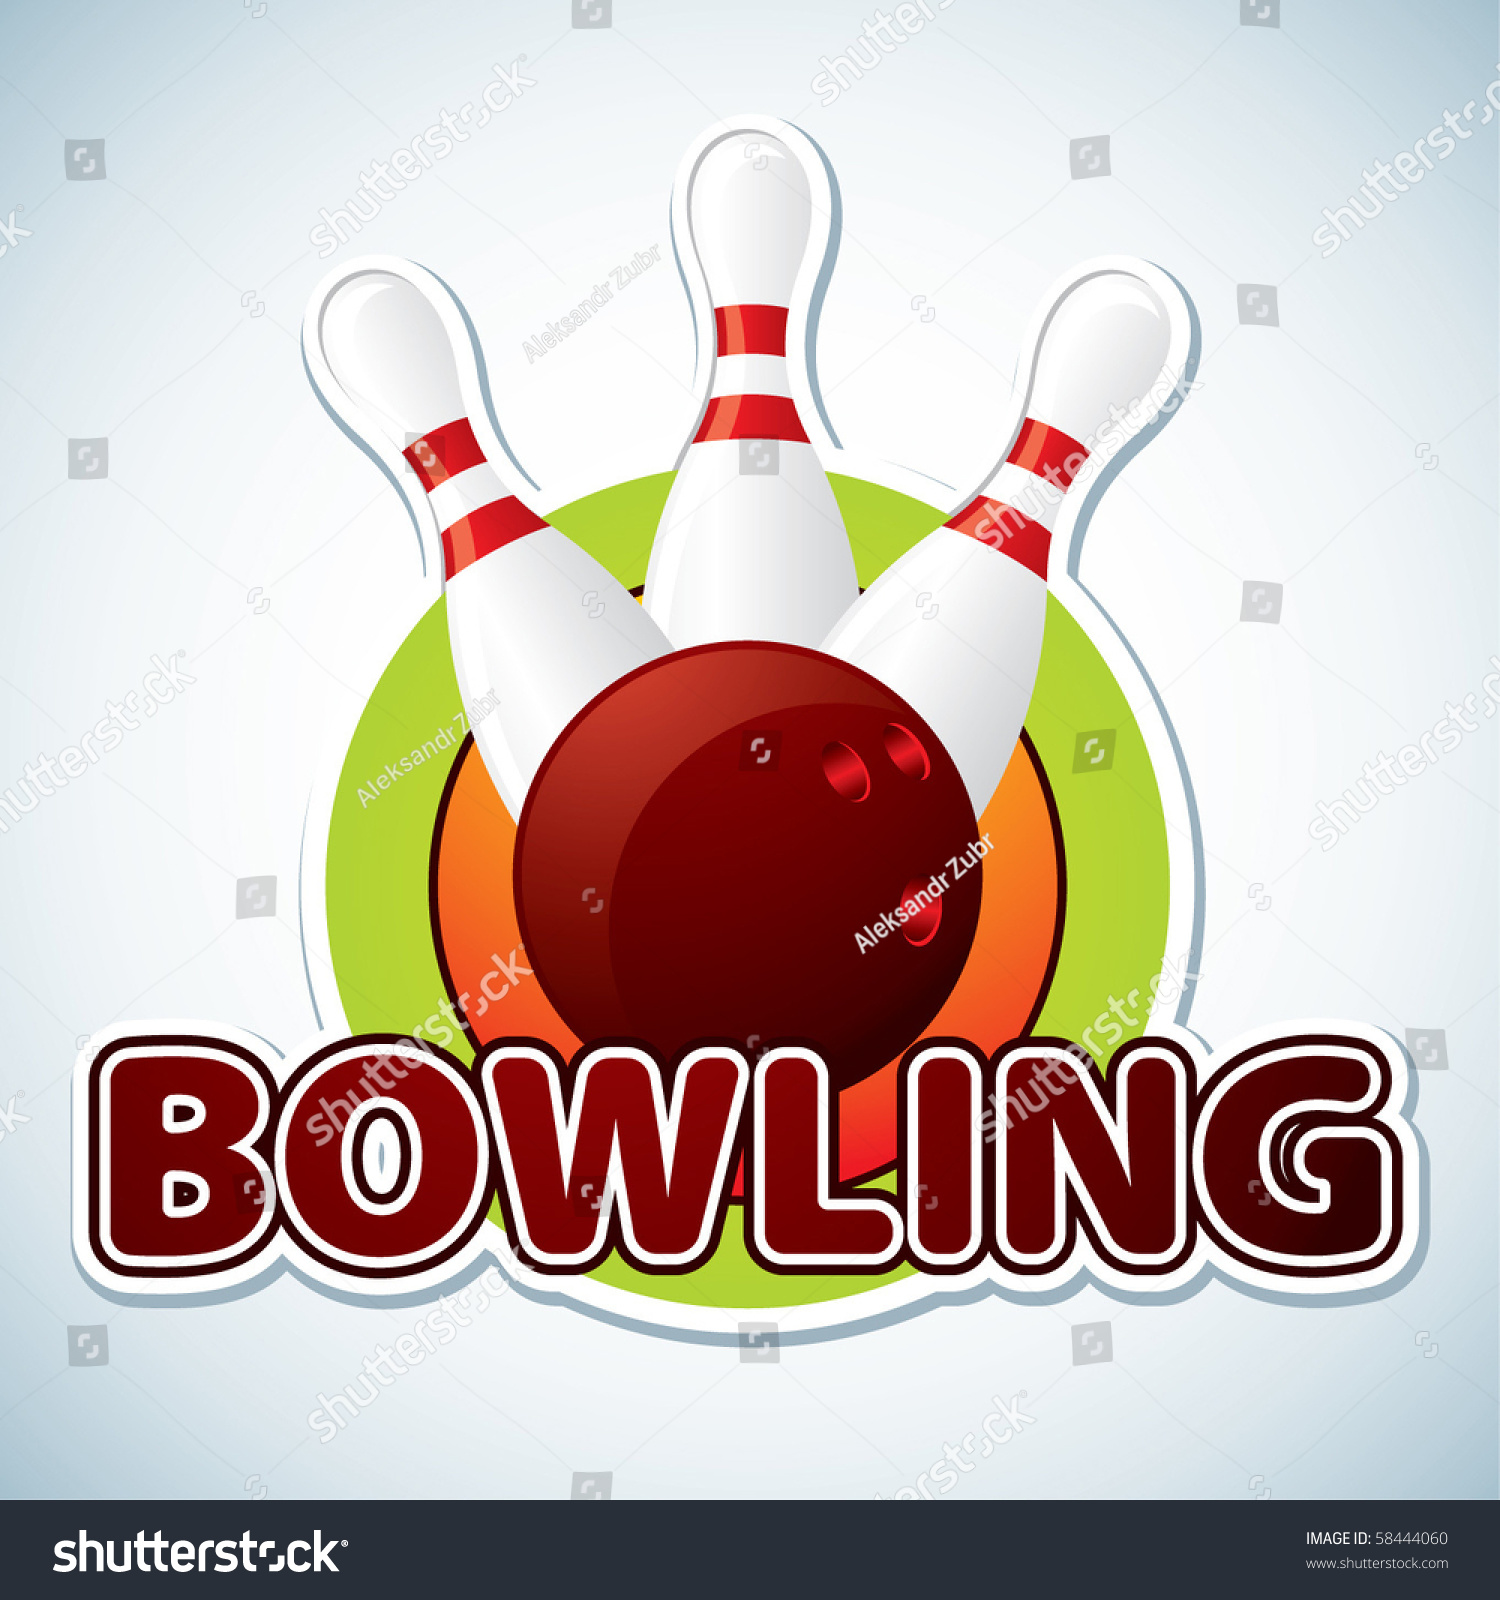 Bowling. Vector Illustration - 58444060 : Shutterstock